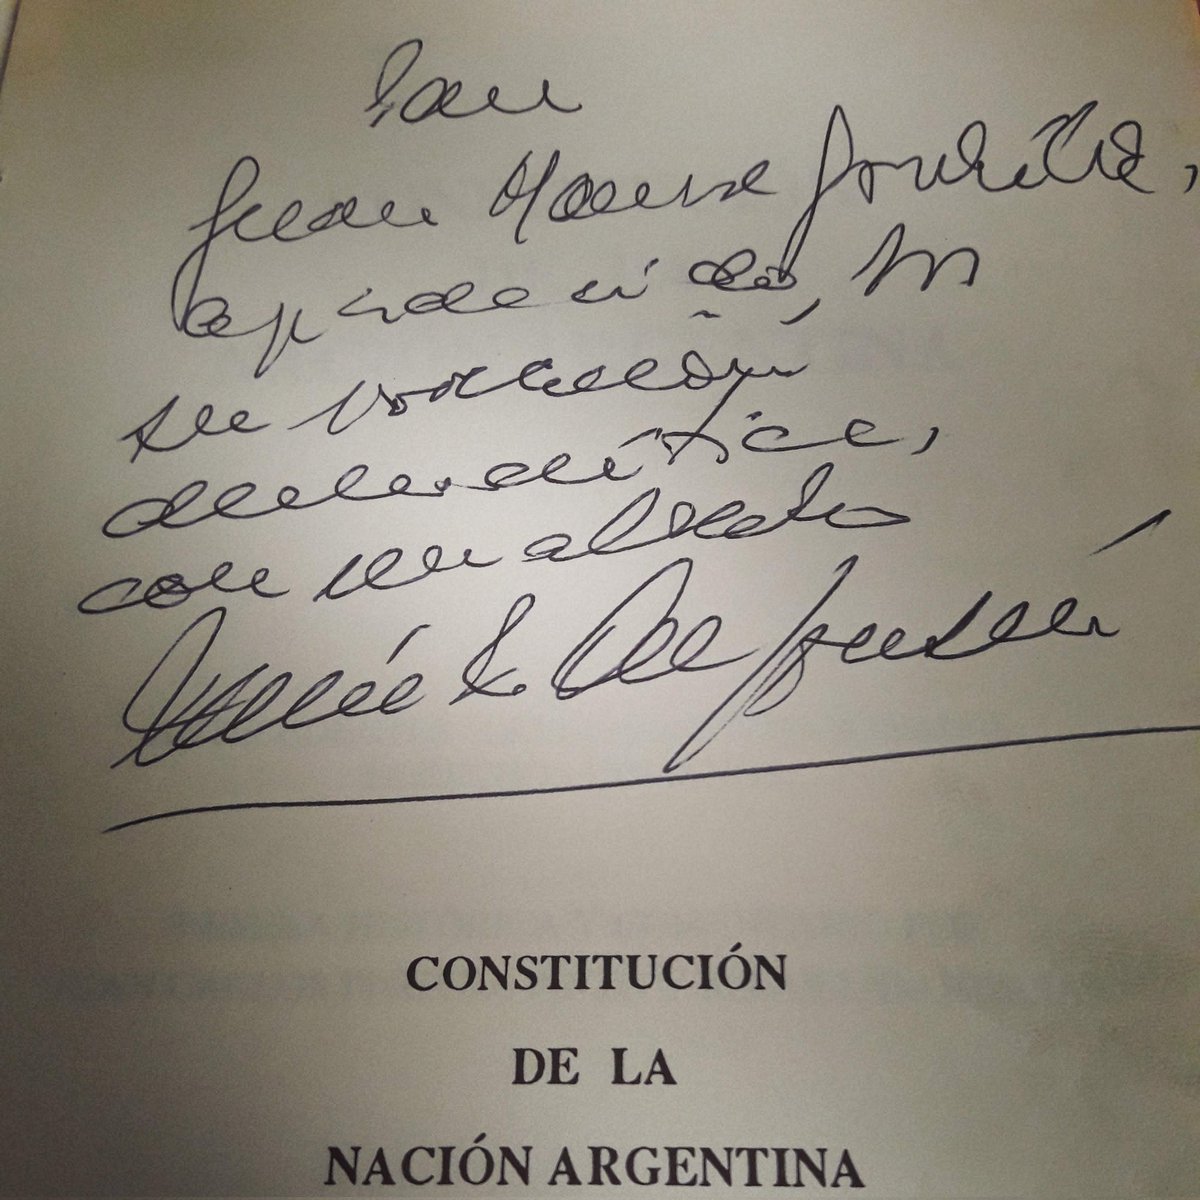 La firma de @AlfonsinEpopeya, en la Constitución Nacional de mí biblioteca. No digan que la defiendan, cuando la avasallan. #Alfonsin